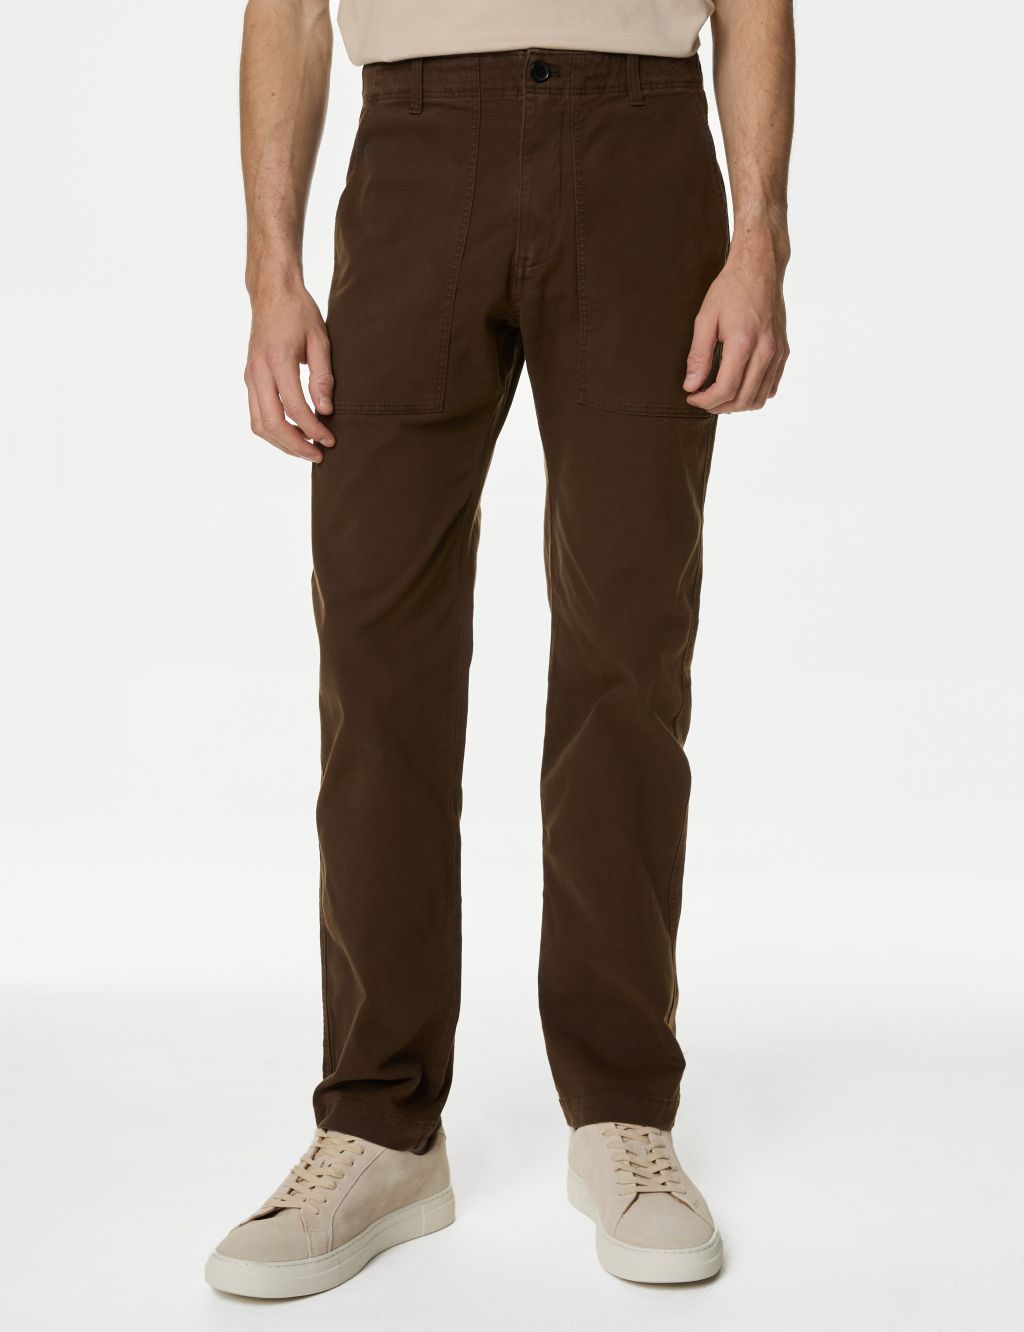 Superdry US Organic Cotton Fatigue Pants - Mens Sale Mens Pants